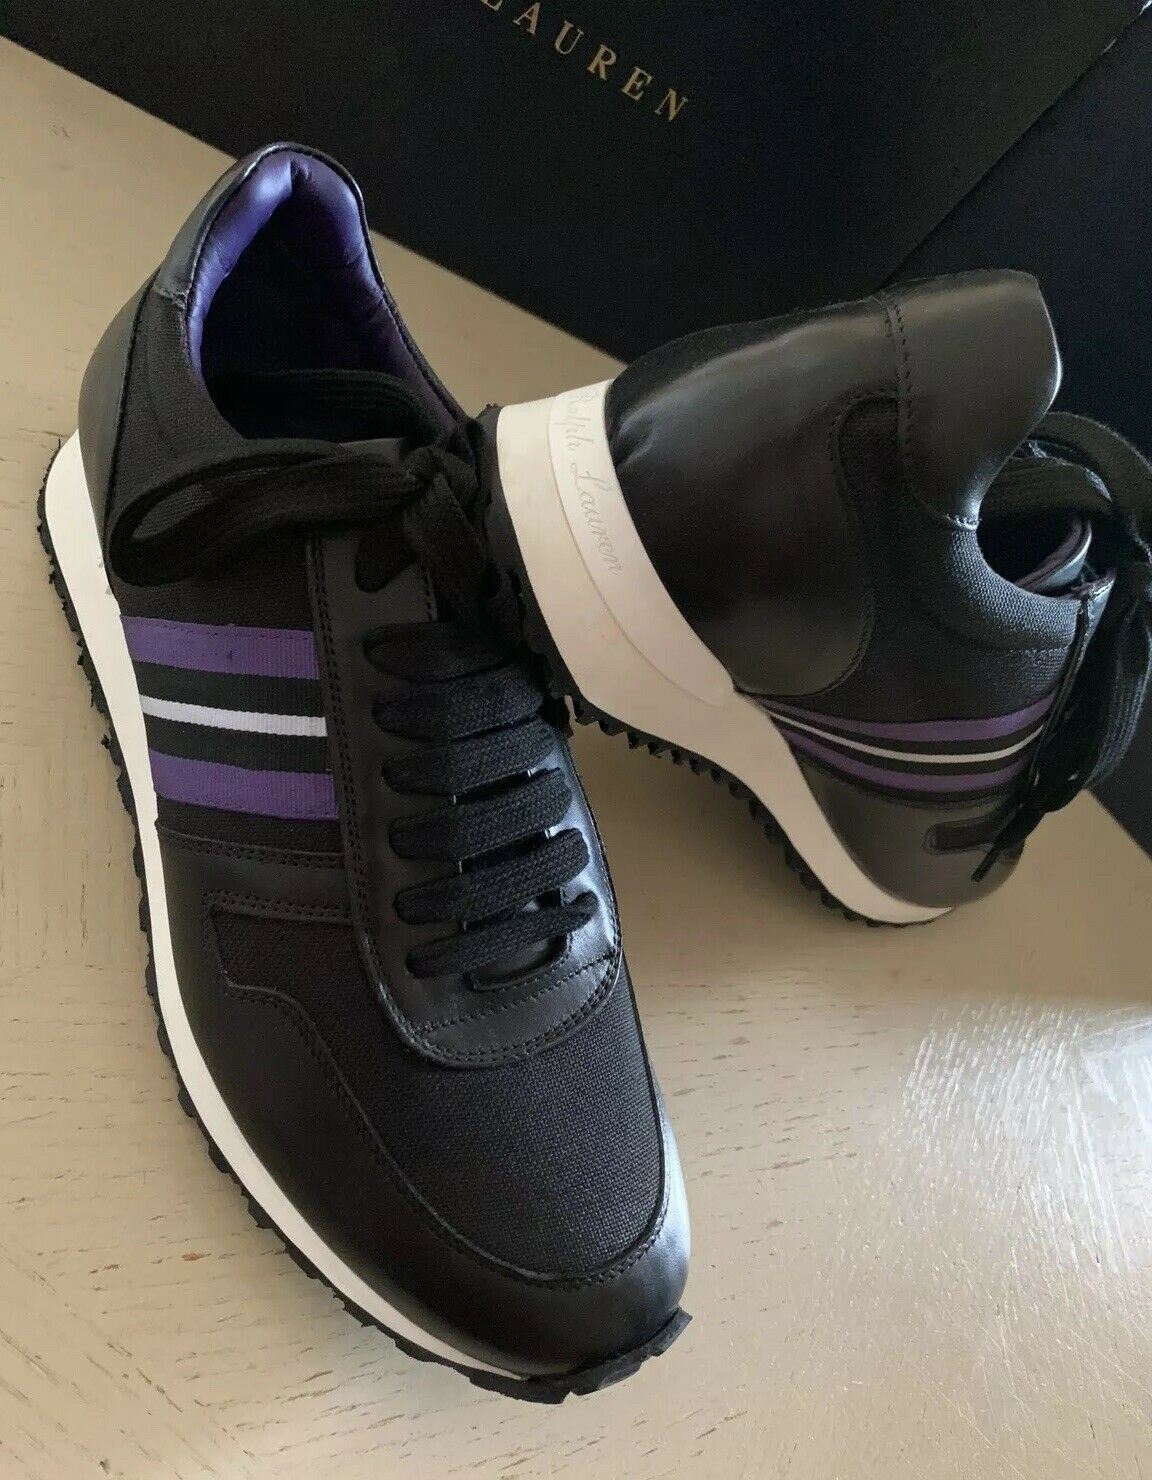 purple label shoes